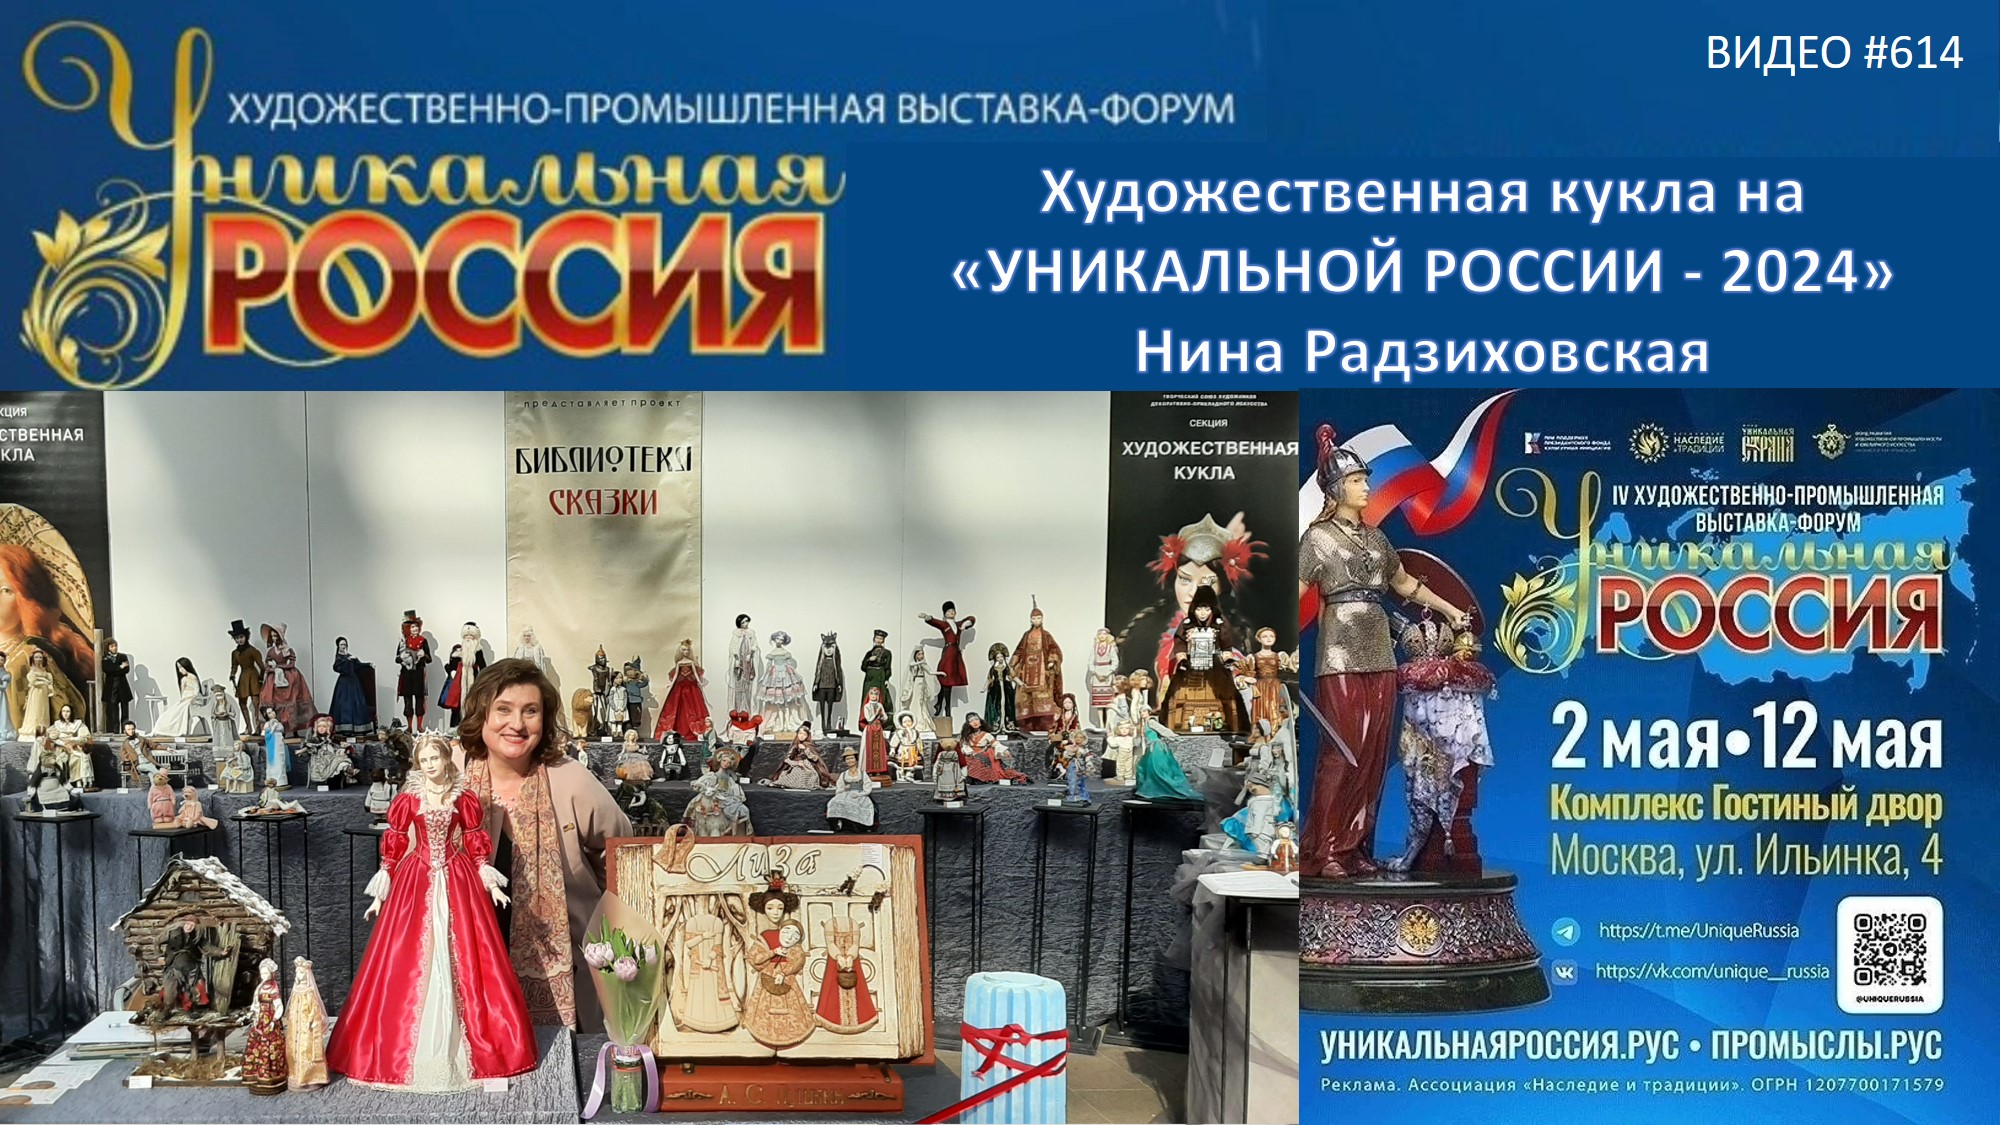 #614 Художественная кукла и НИНА РАДЗИХОВСКАЯ на "Уникальной России" в Гостином Дворе - 2024